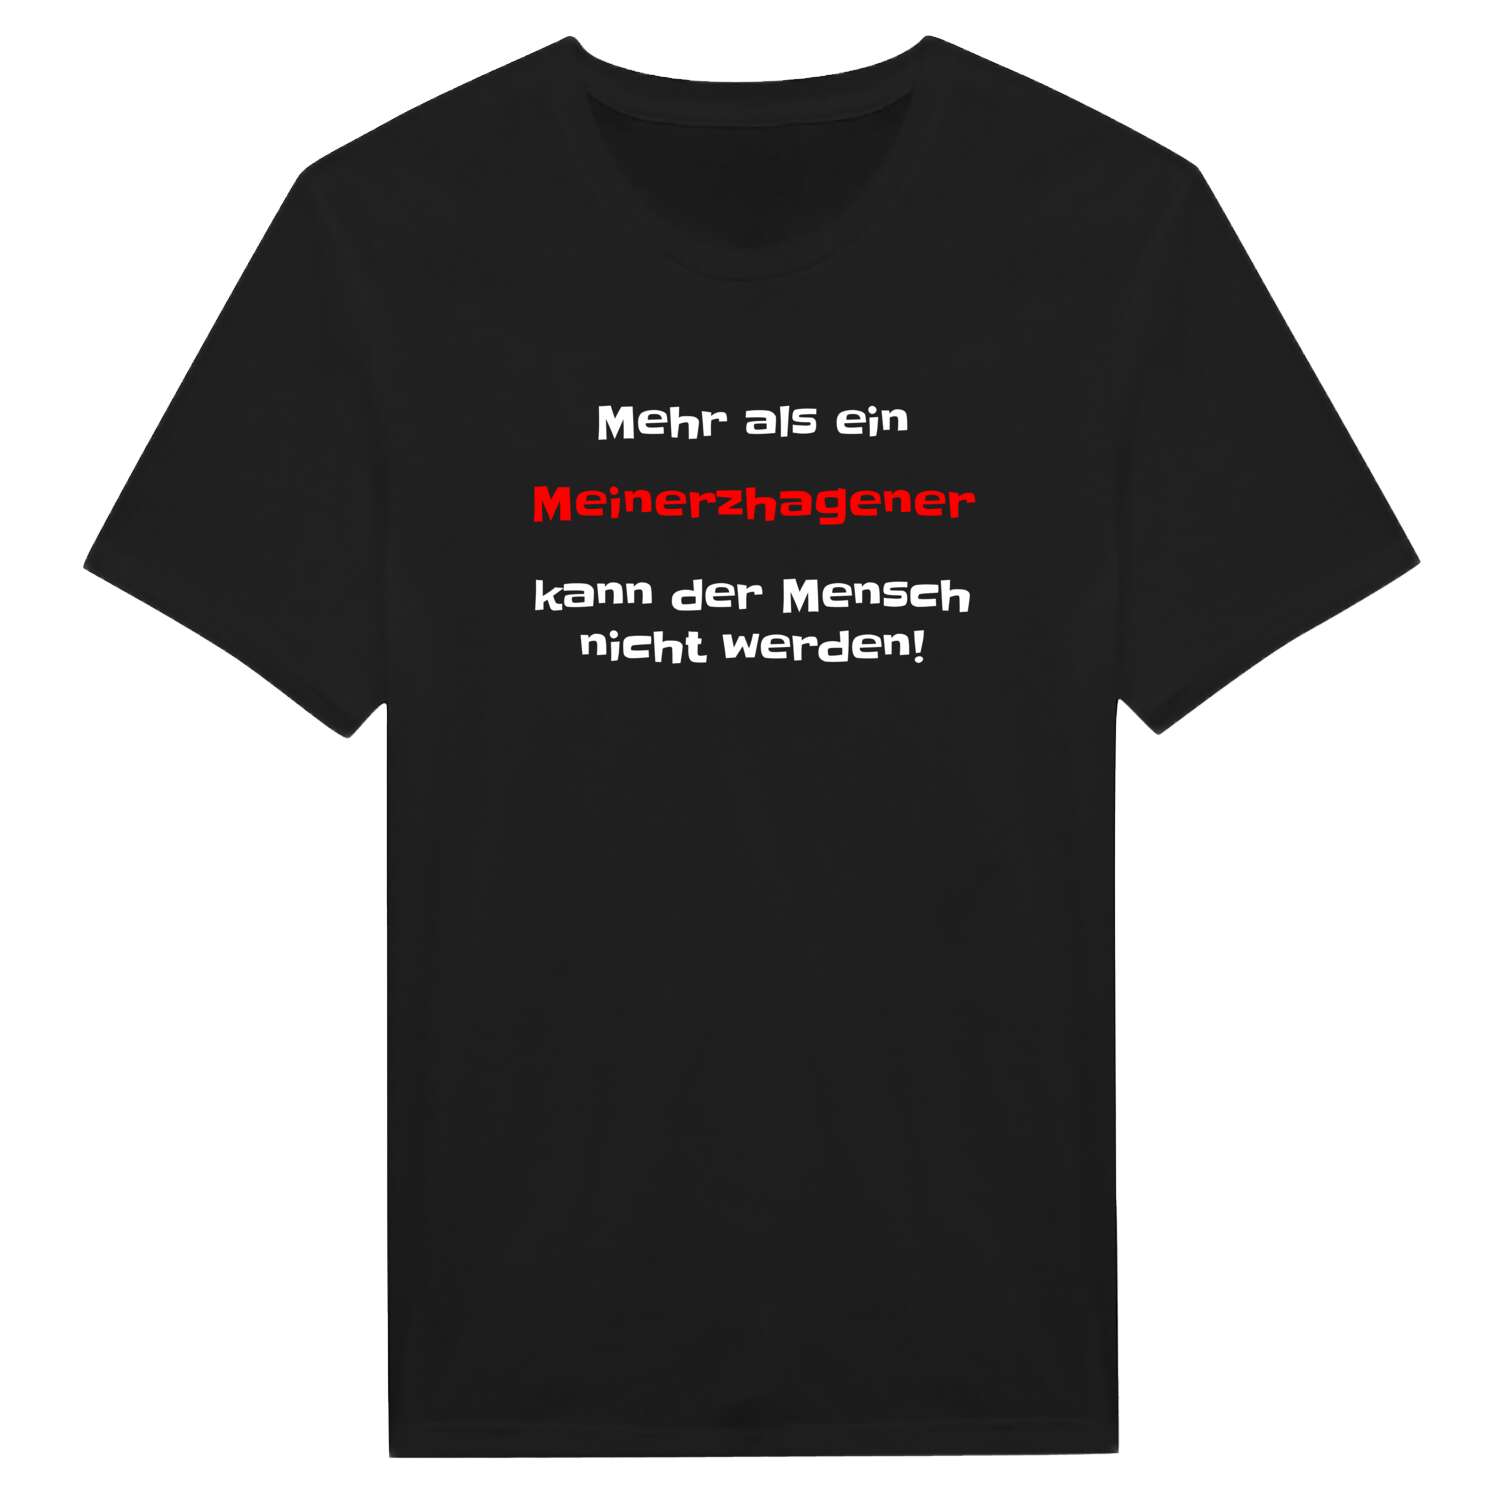 Meinerzhagen T-Shirt »Mehr als ein«